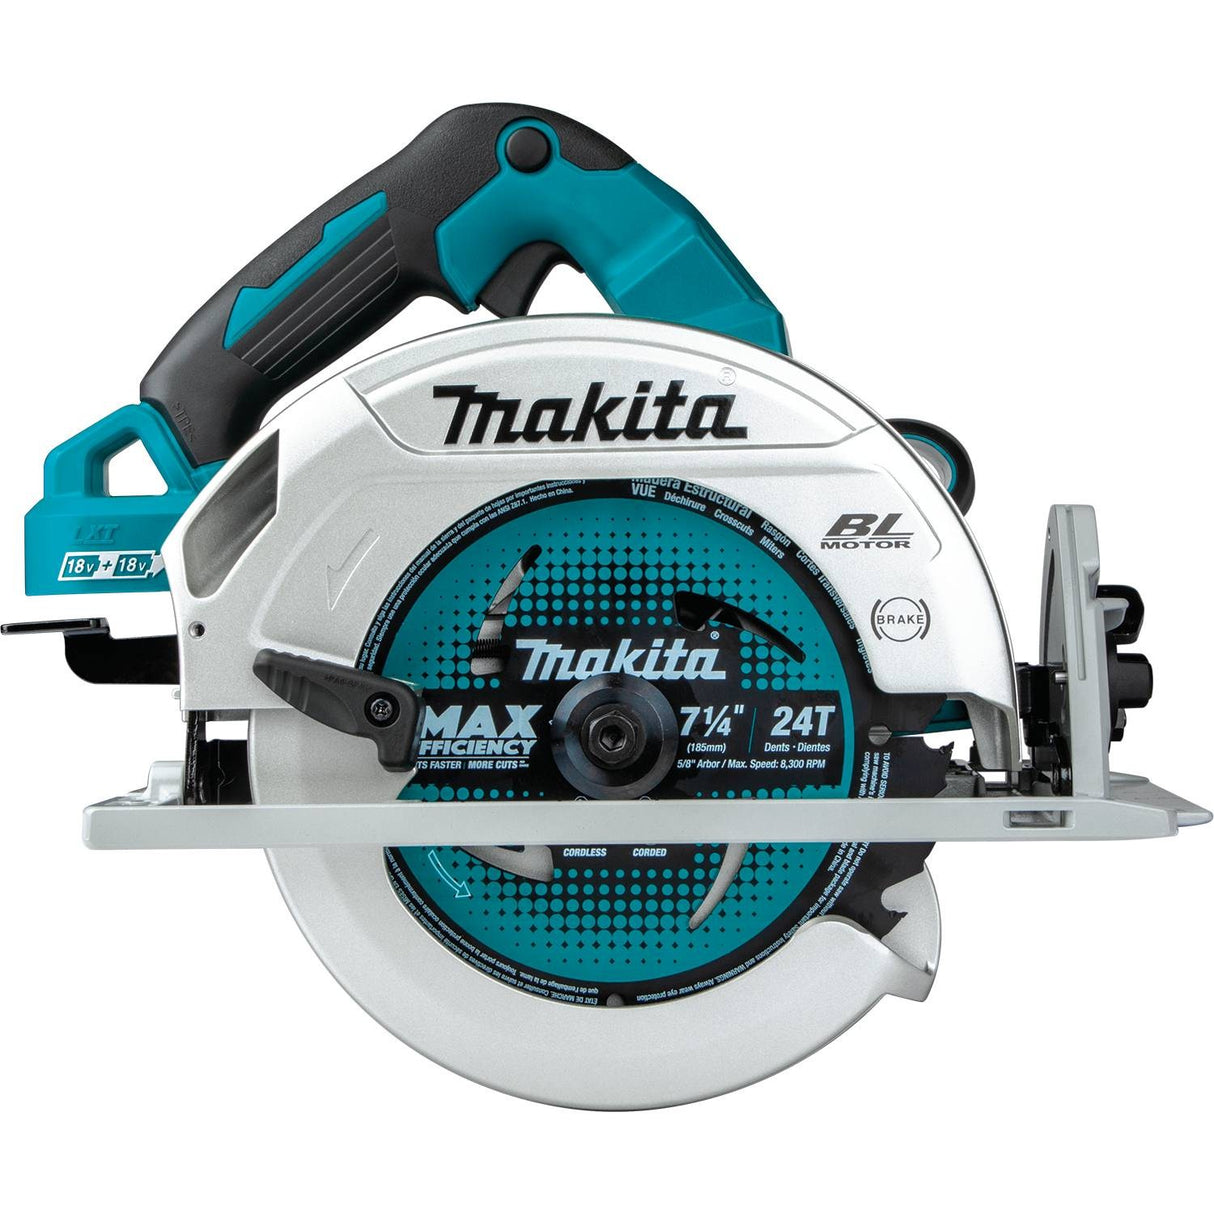 Makita XSH06Z 18V X2 LXT (36V) Brushless 7-1/4" Circular Saw, Tool Only - 5